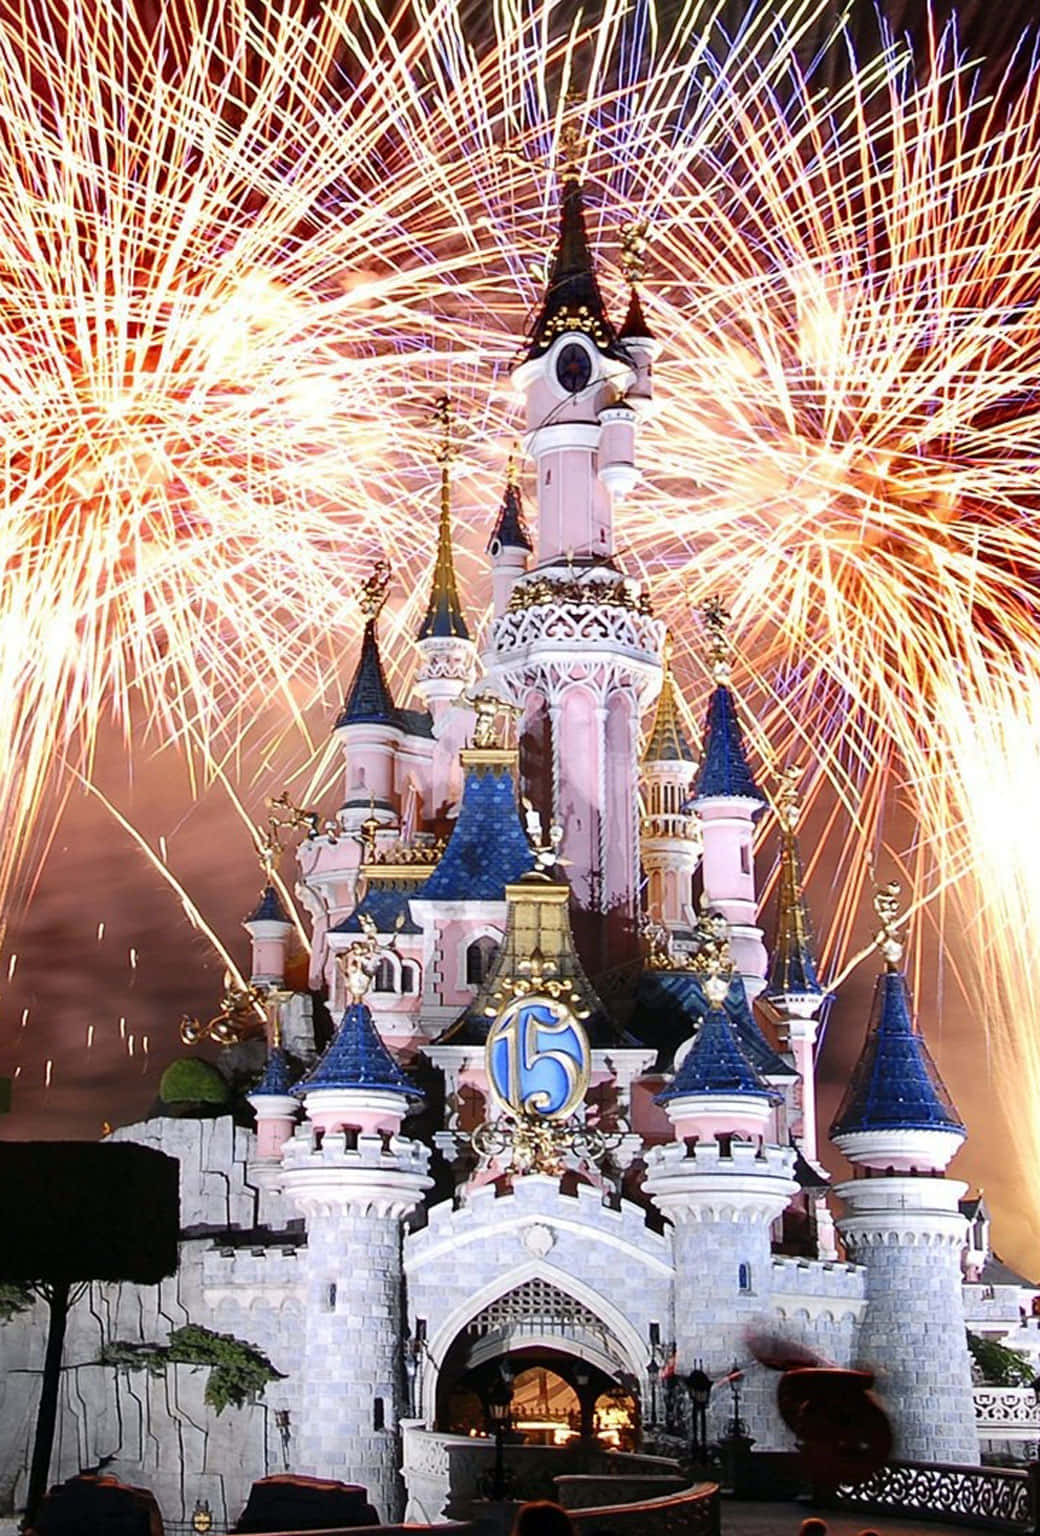 Genießensie Einen Zauberhaften Urlaub In Disney World Wallpaper